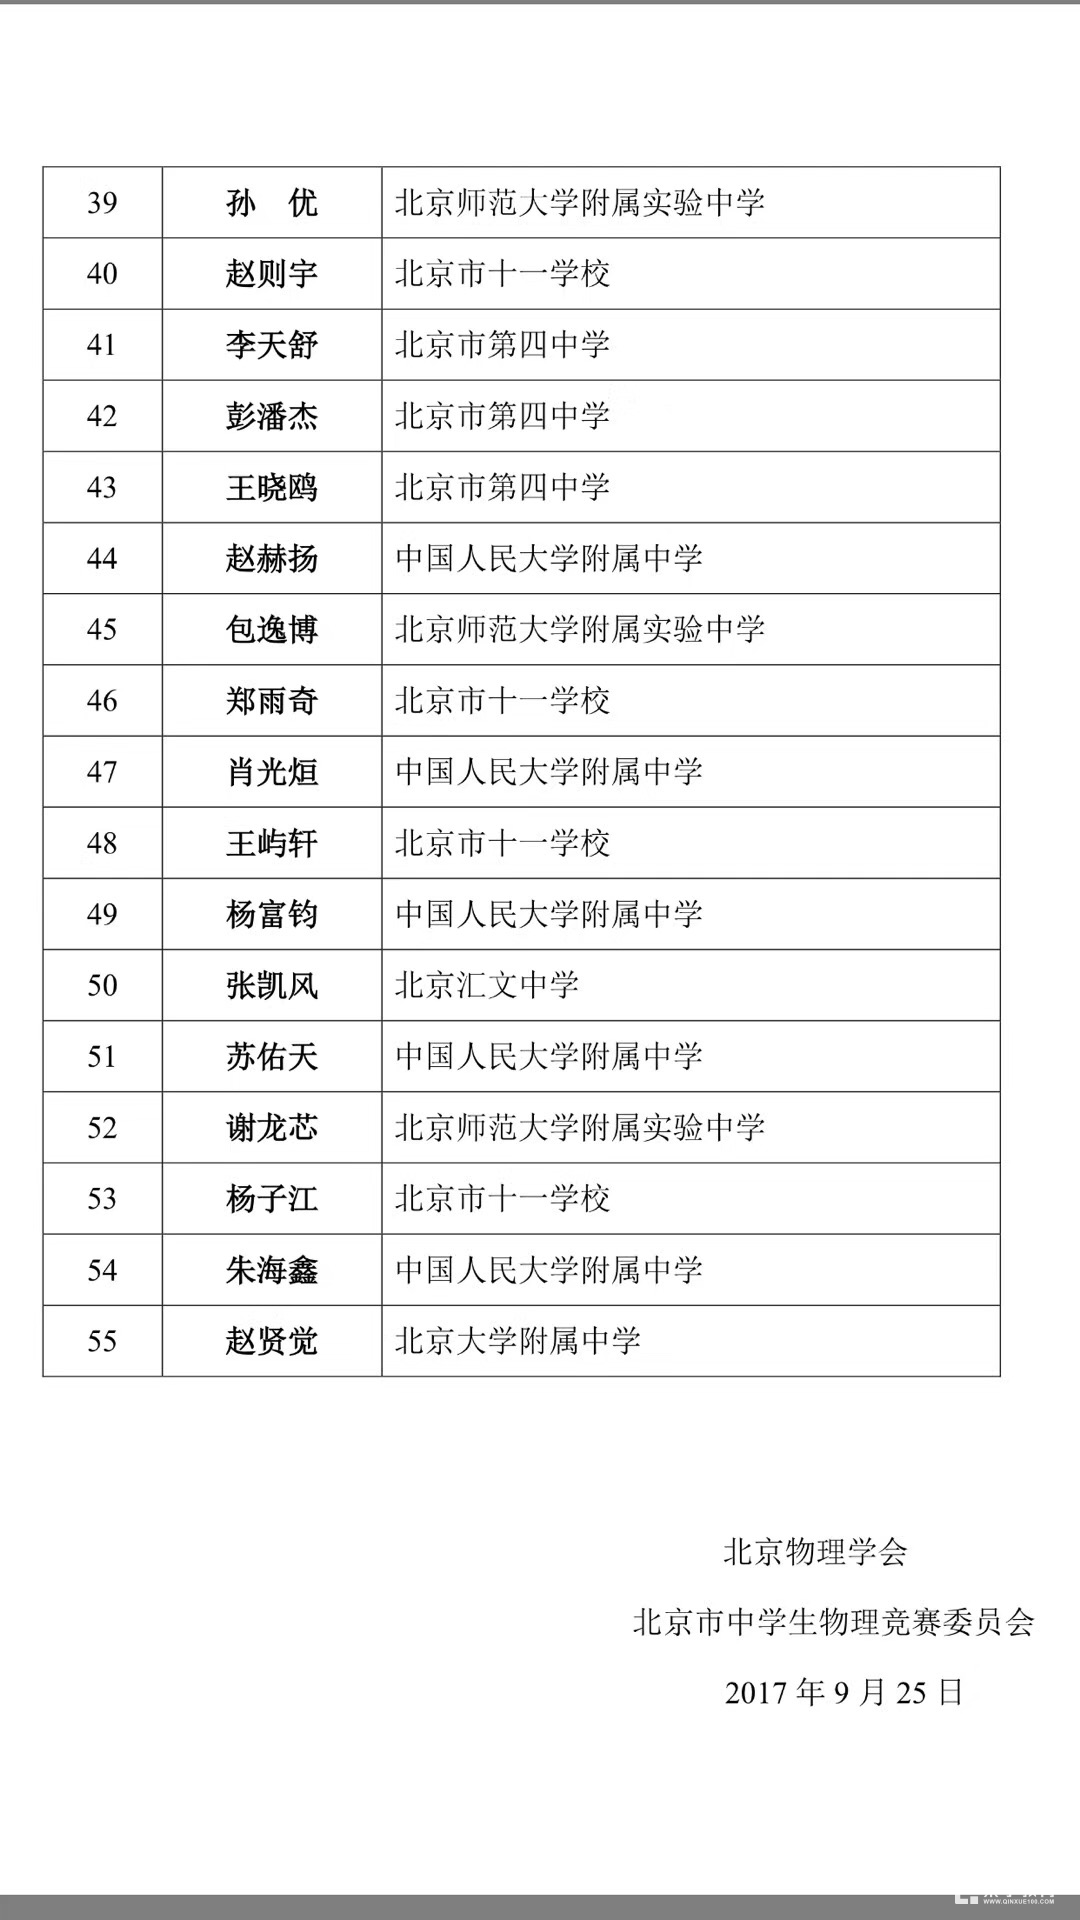 北京赛区第34届全国中学生物理竞赛省一获奖名单公布！共计55人获得省一奖项！